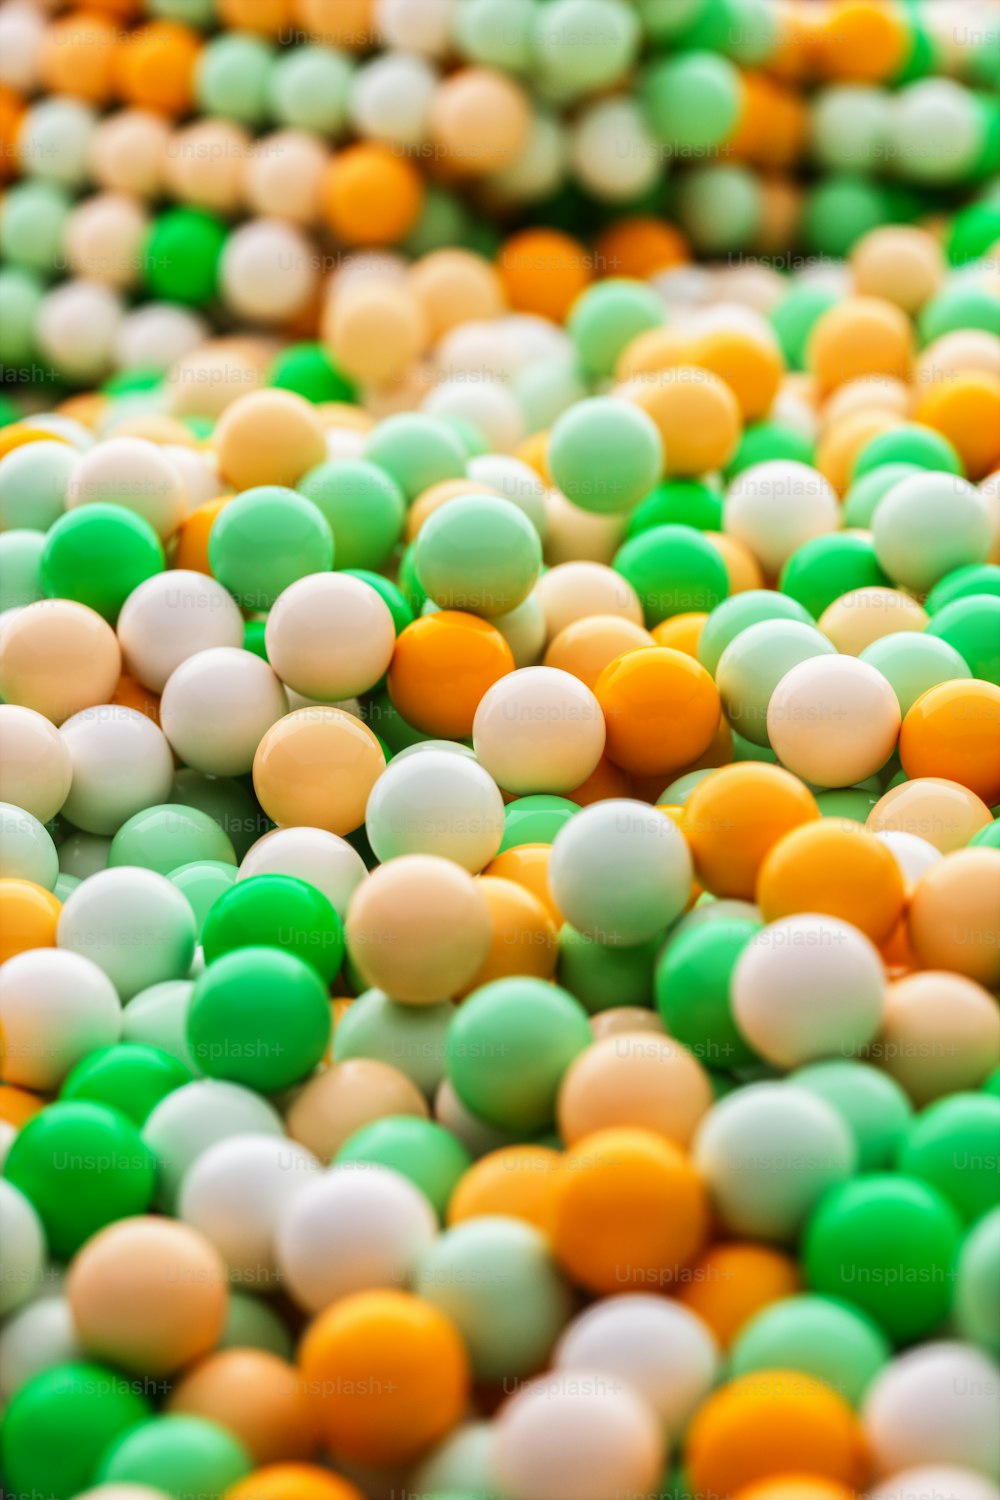 um close up de um monte de bolas verdes e brancas